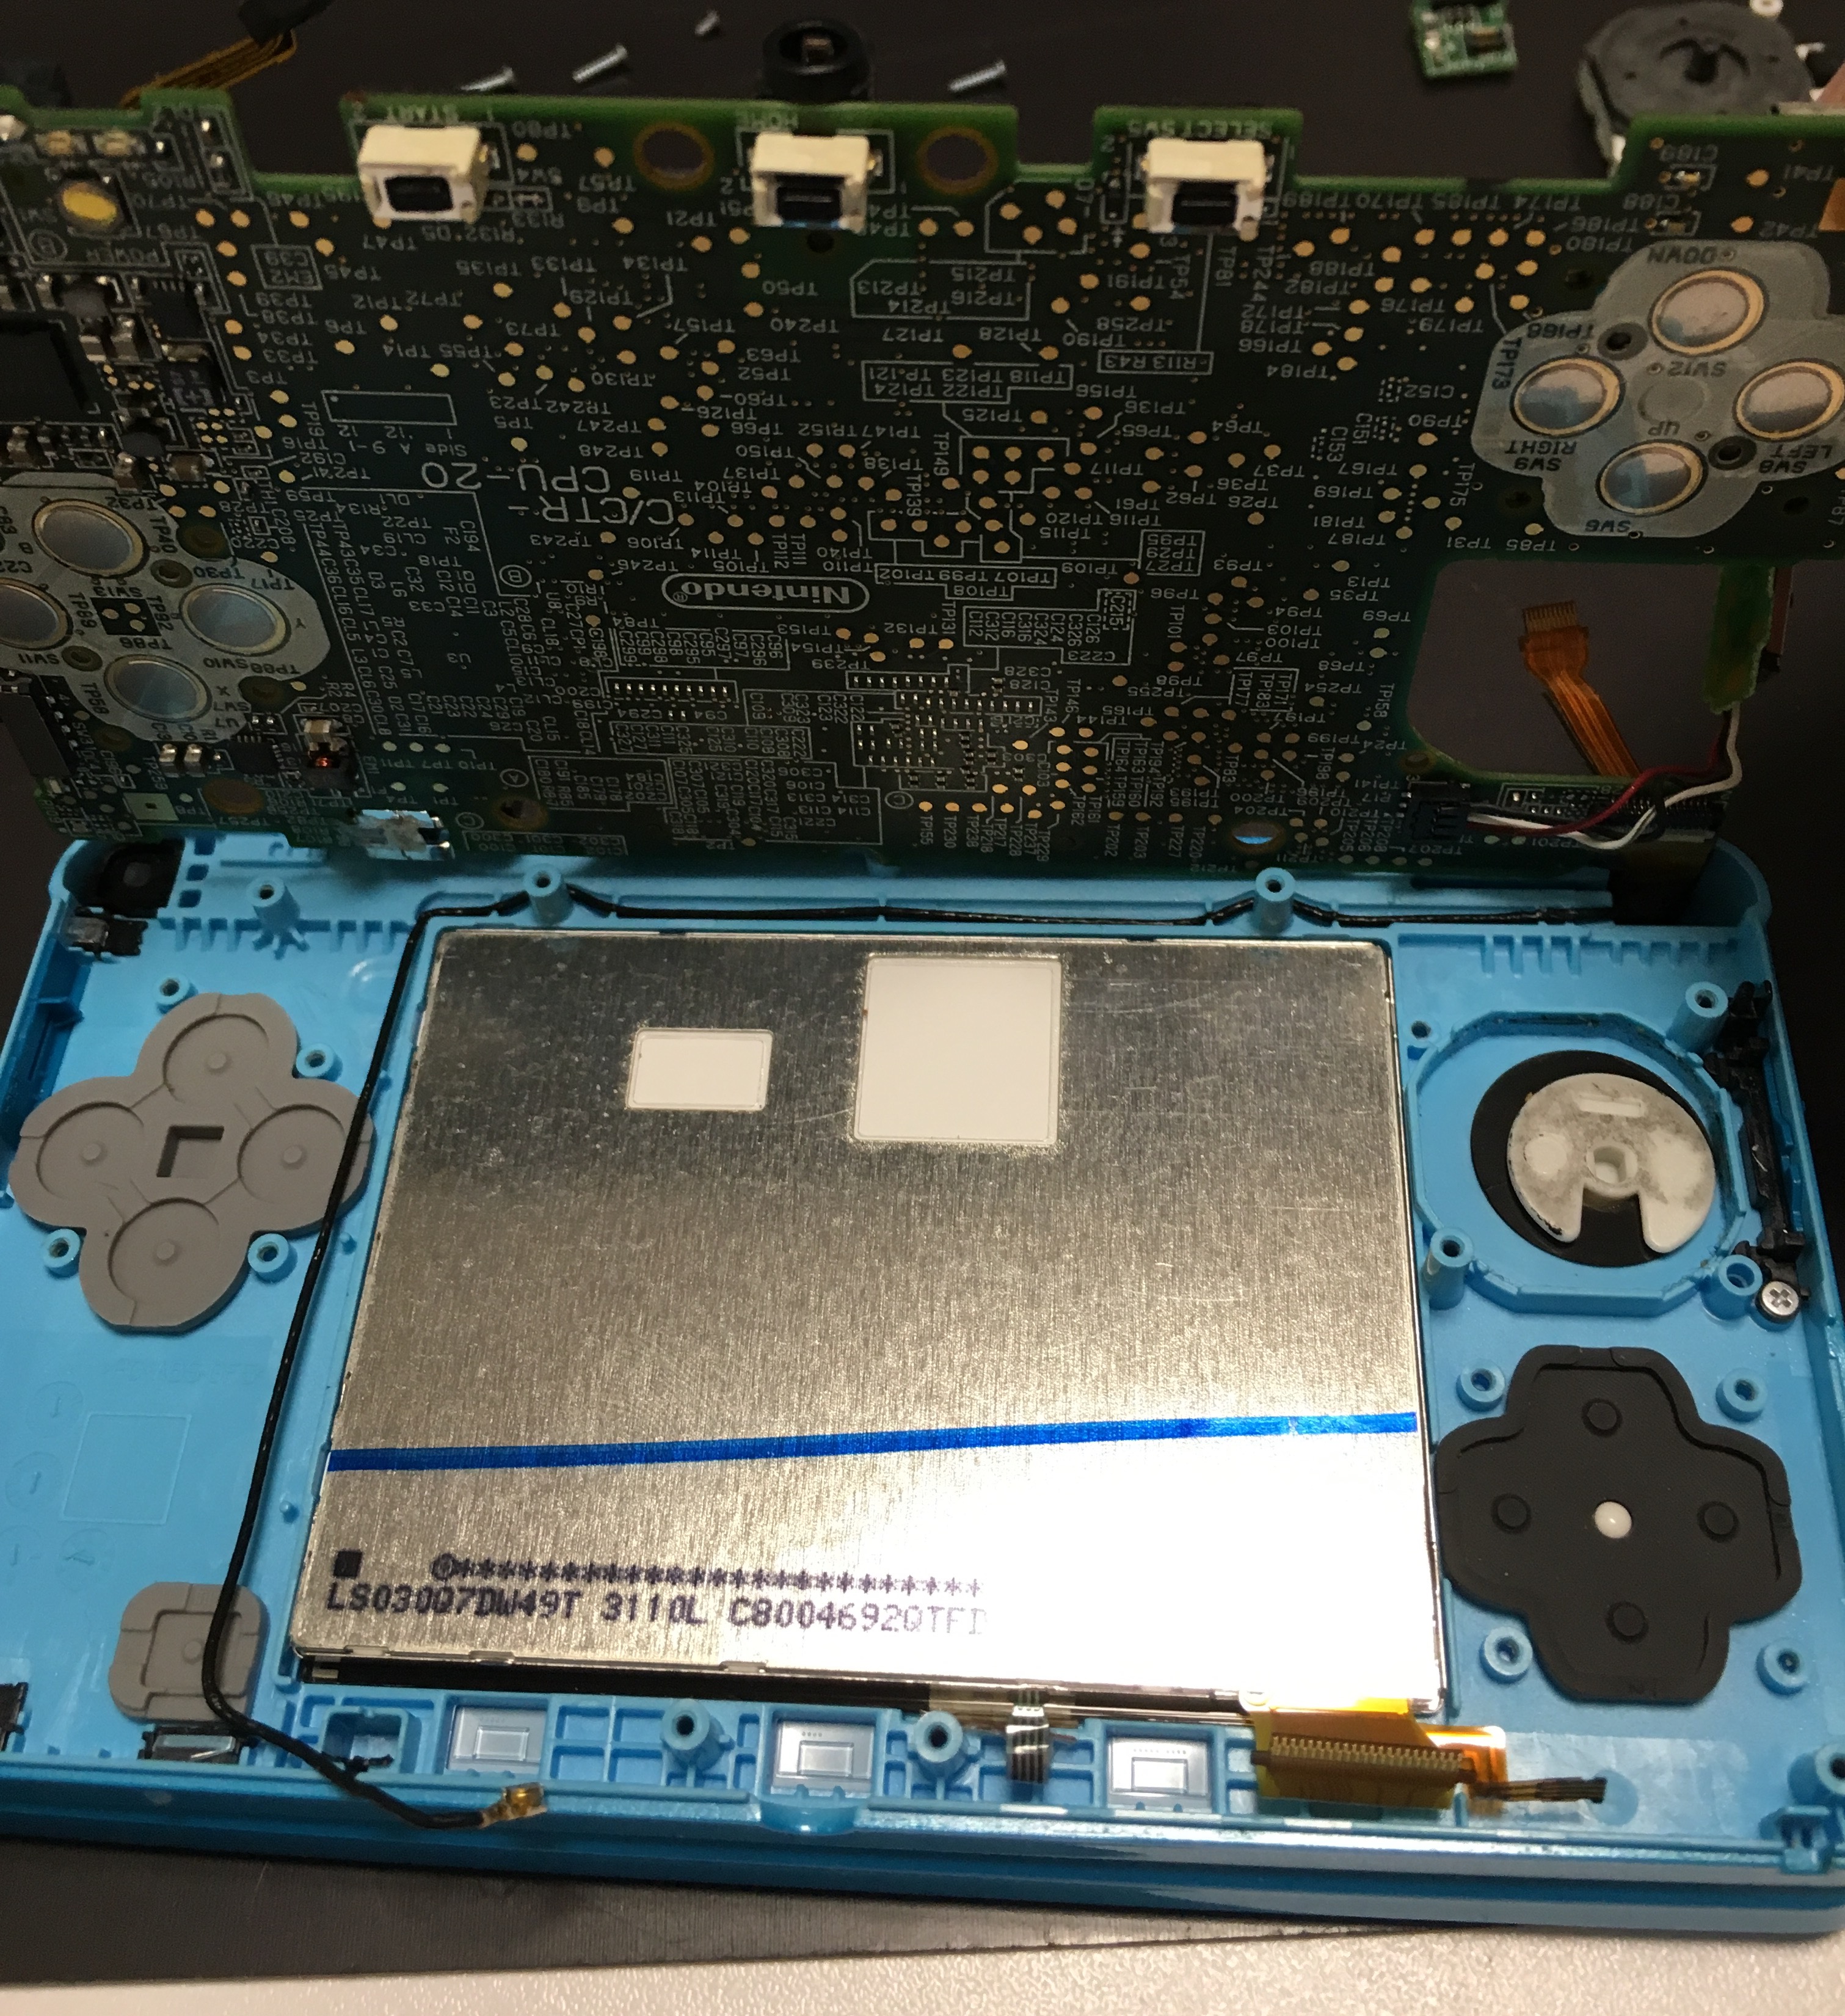 3dsのxボタンが利かなくなった Nintendo3ds Switch Psp 修理のゲームホスピタル Nintendo3ds ニンテンドーds Psp Switch 修理